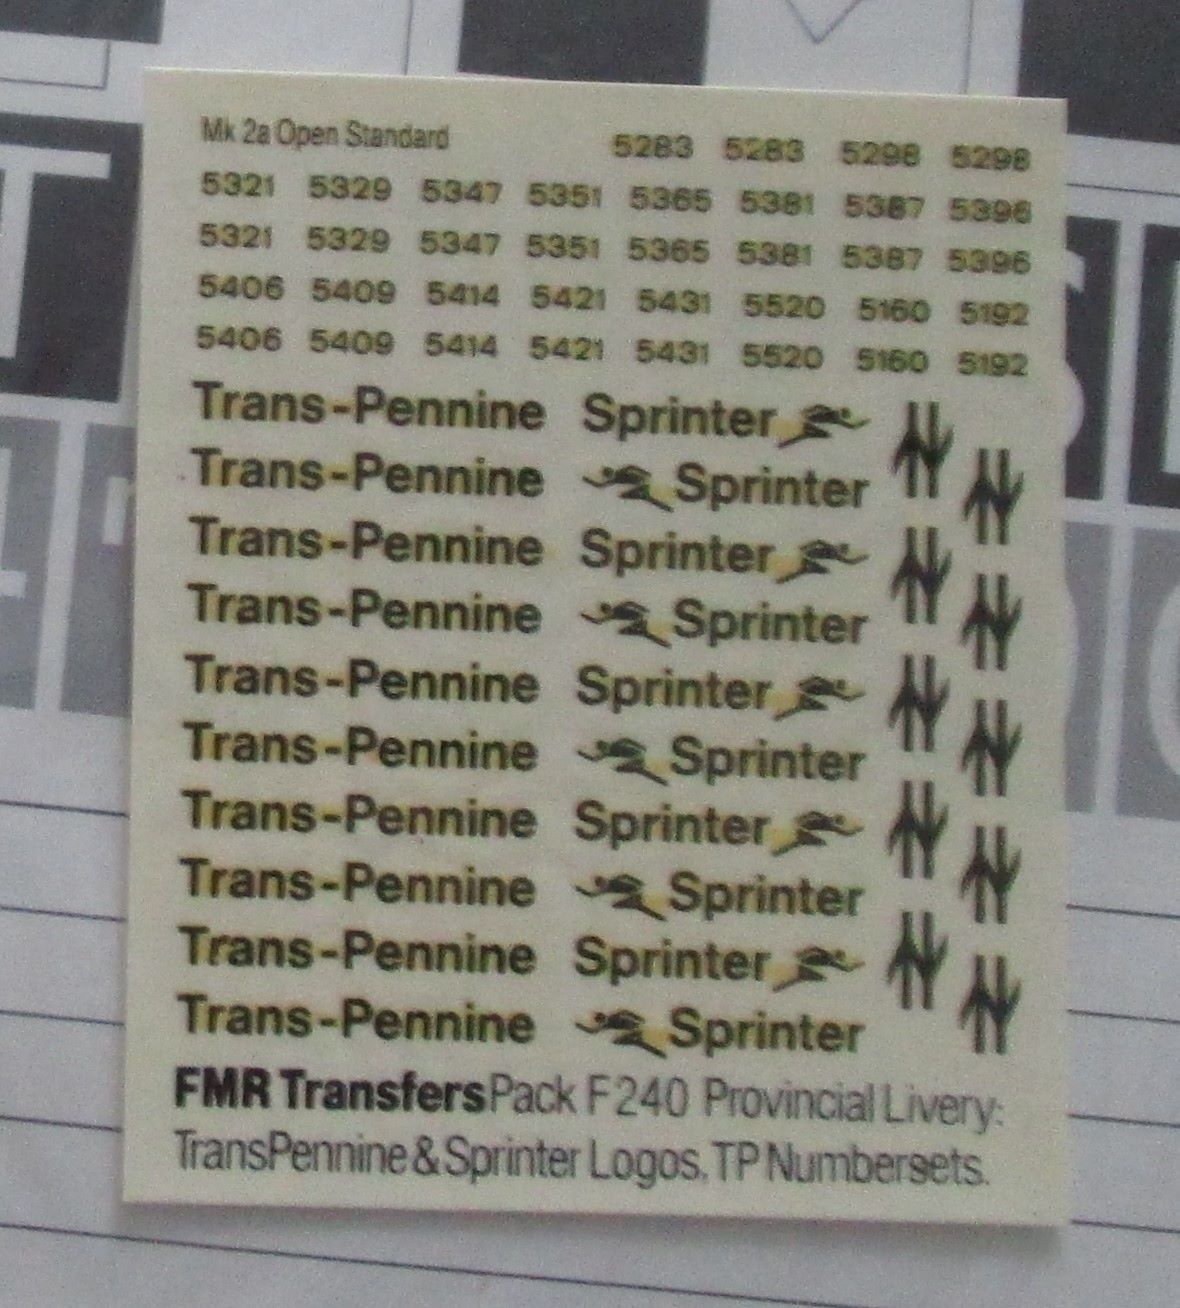 F240 FMR TRANSFERS Provincial Livery: TransPennine & Sprinter logos, TransPennine numbersets